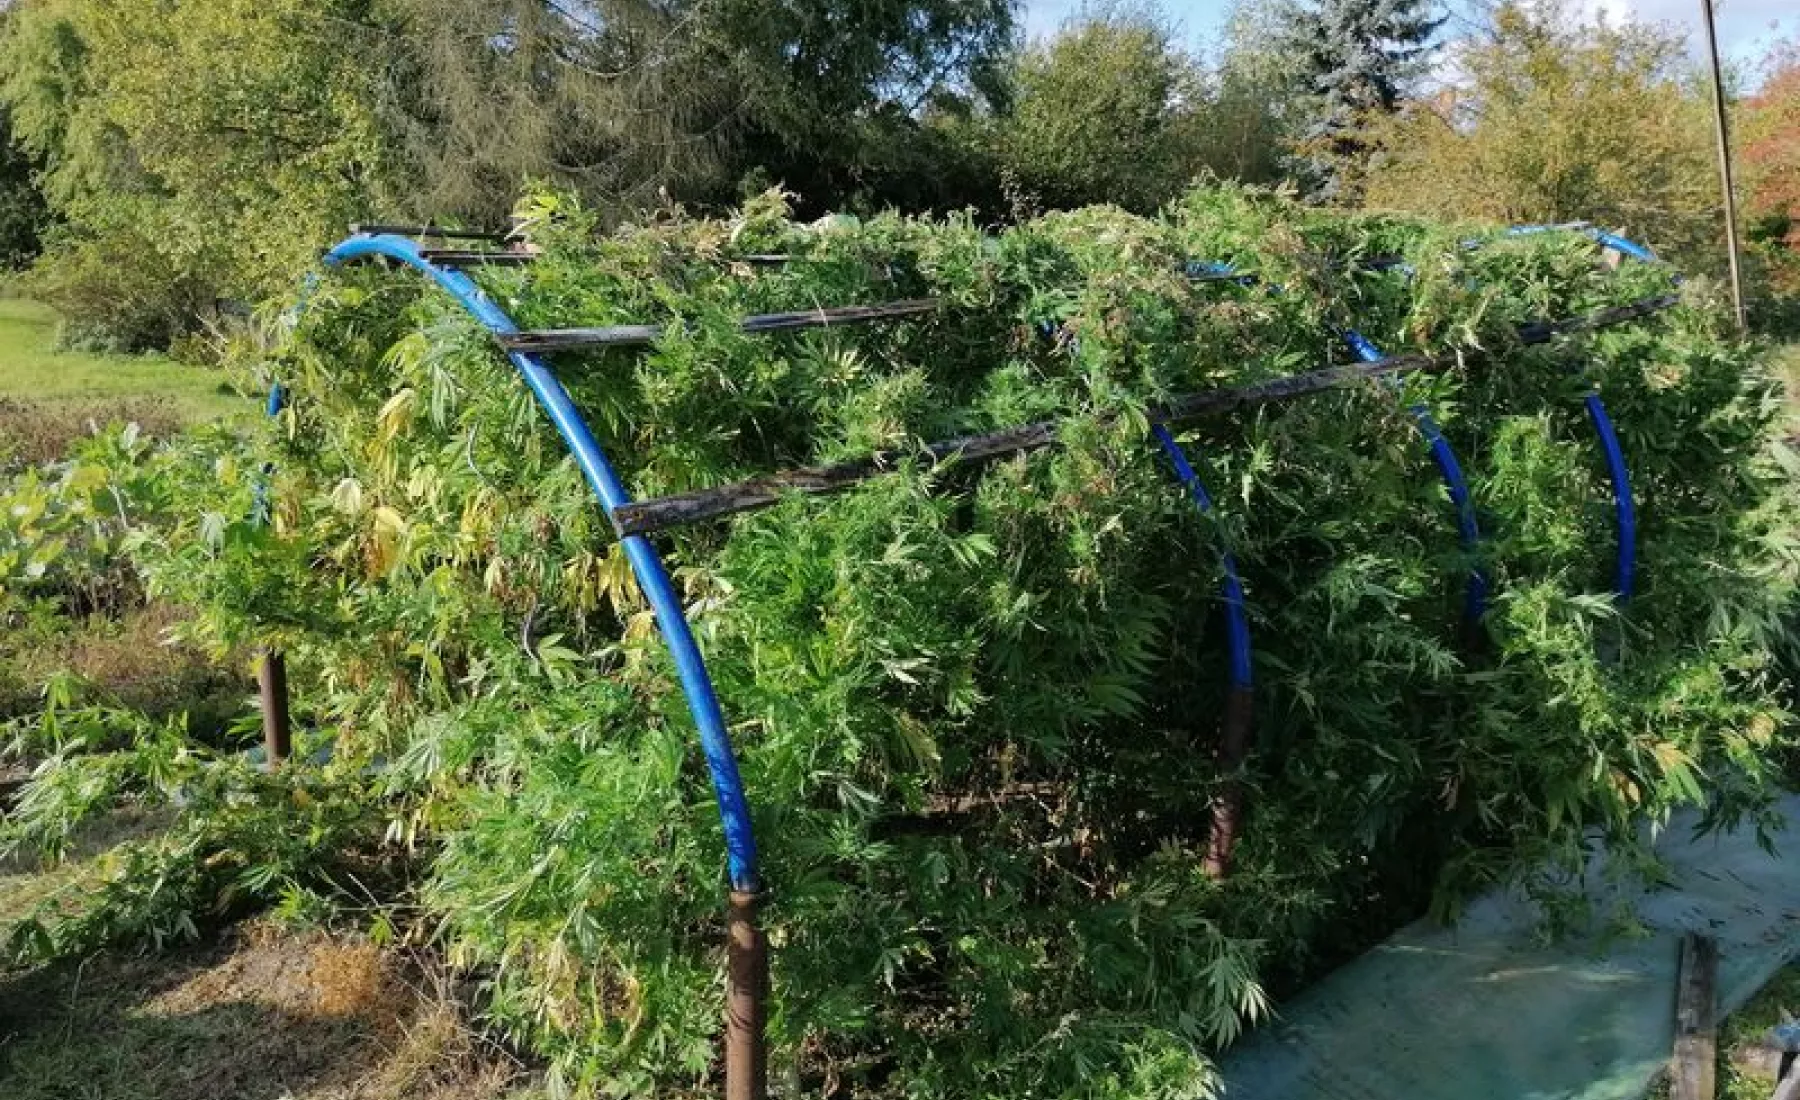 Cannabisplantage in Garten